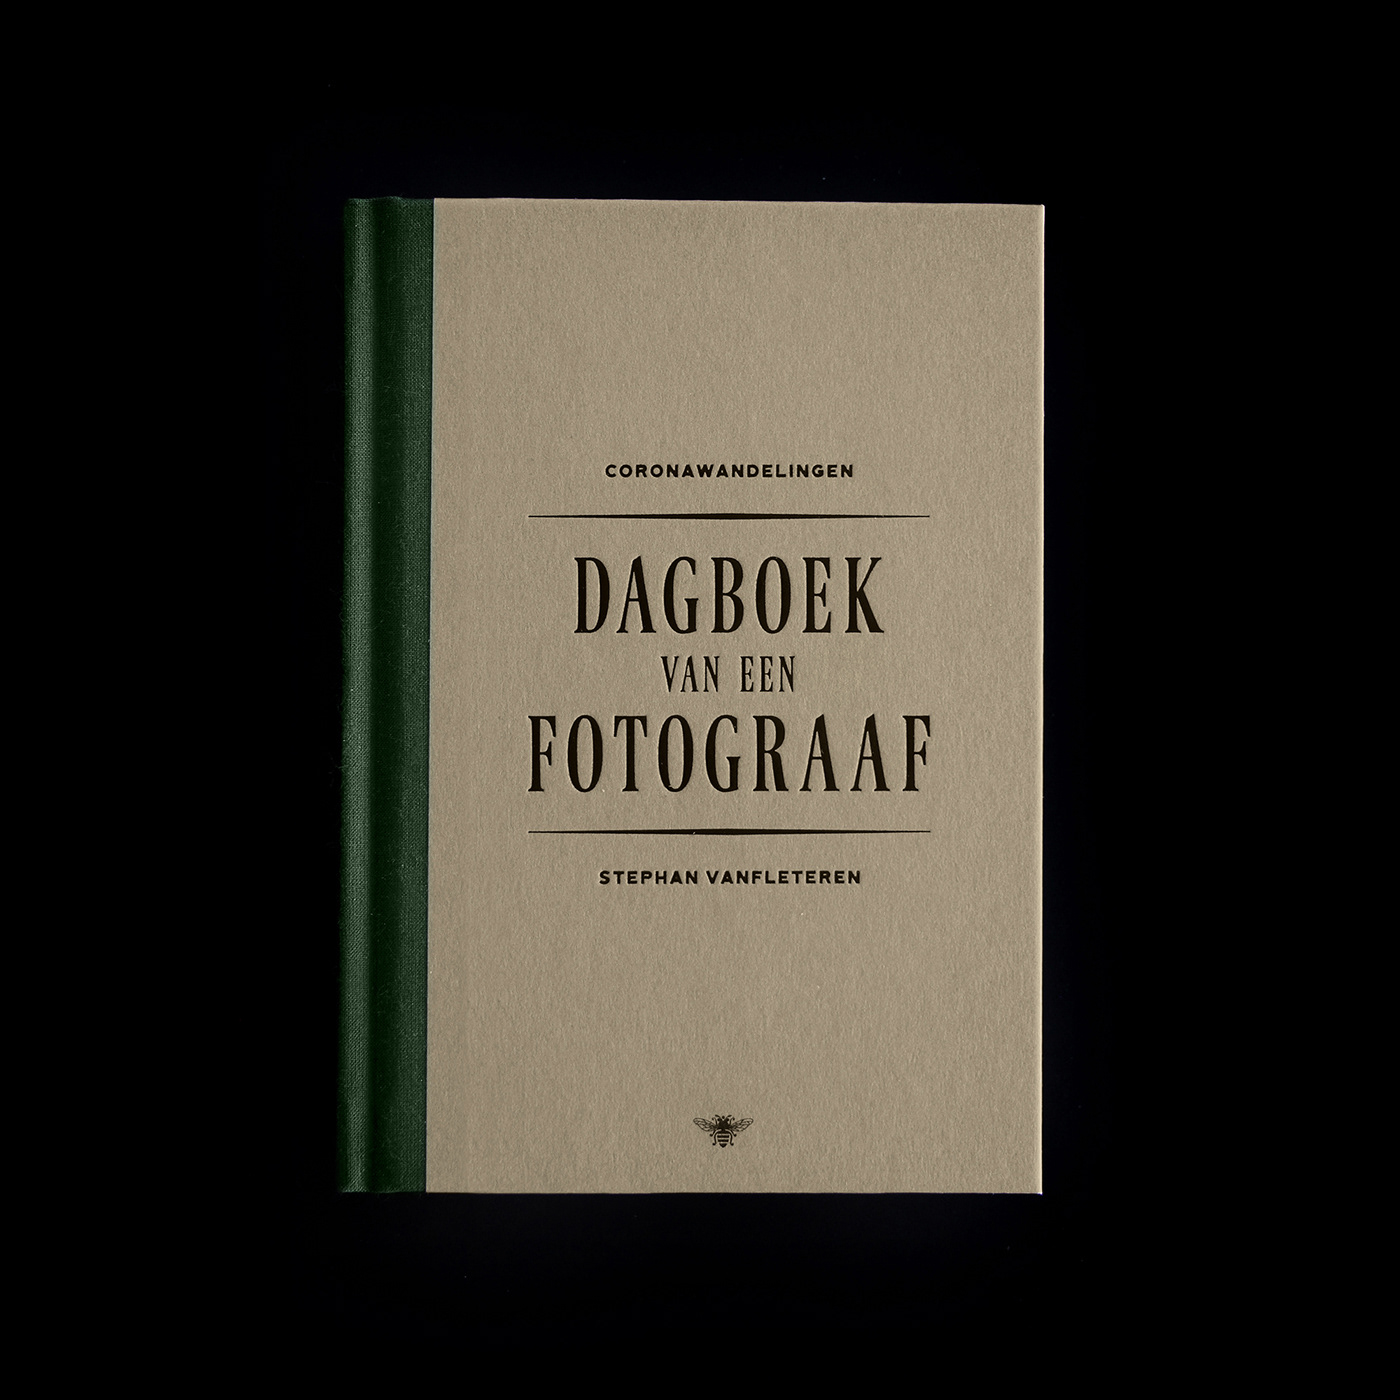 Bookdesign coverdesign de bezige bij green hardcover hotfoil Photography  stephan vanfleteren